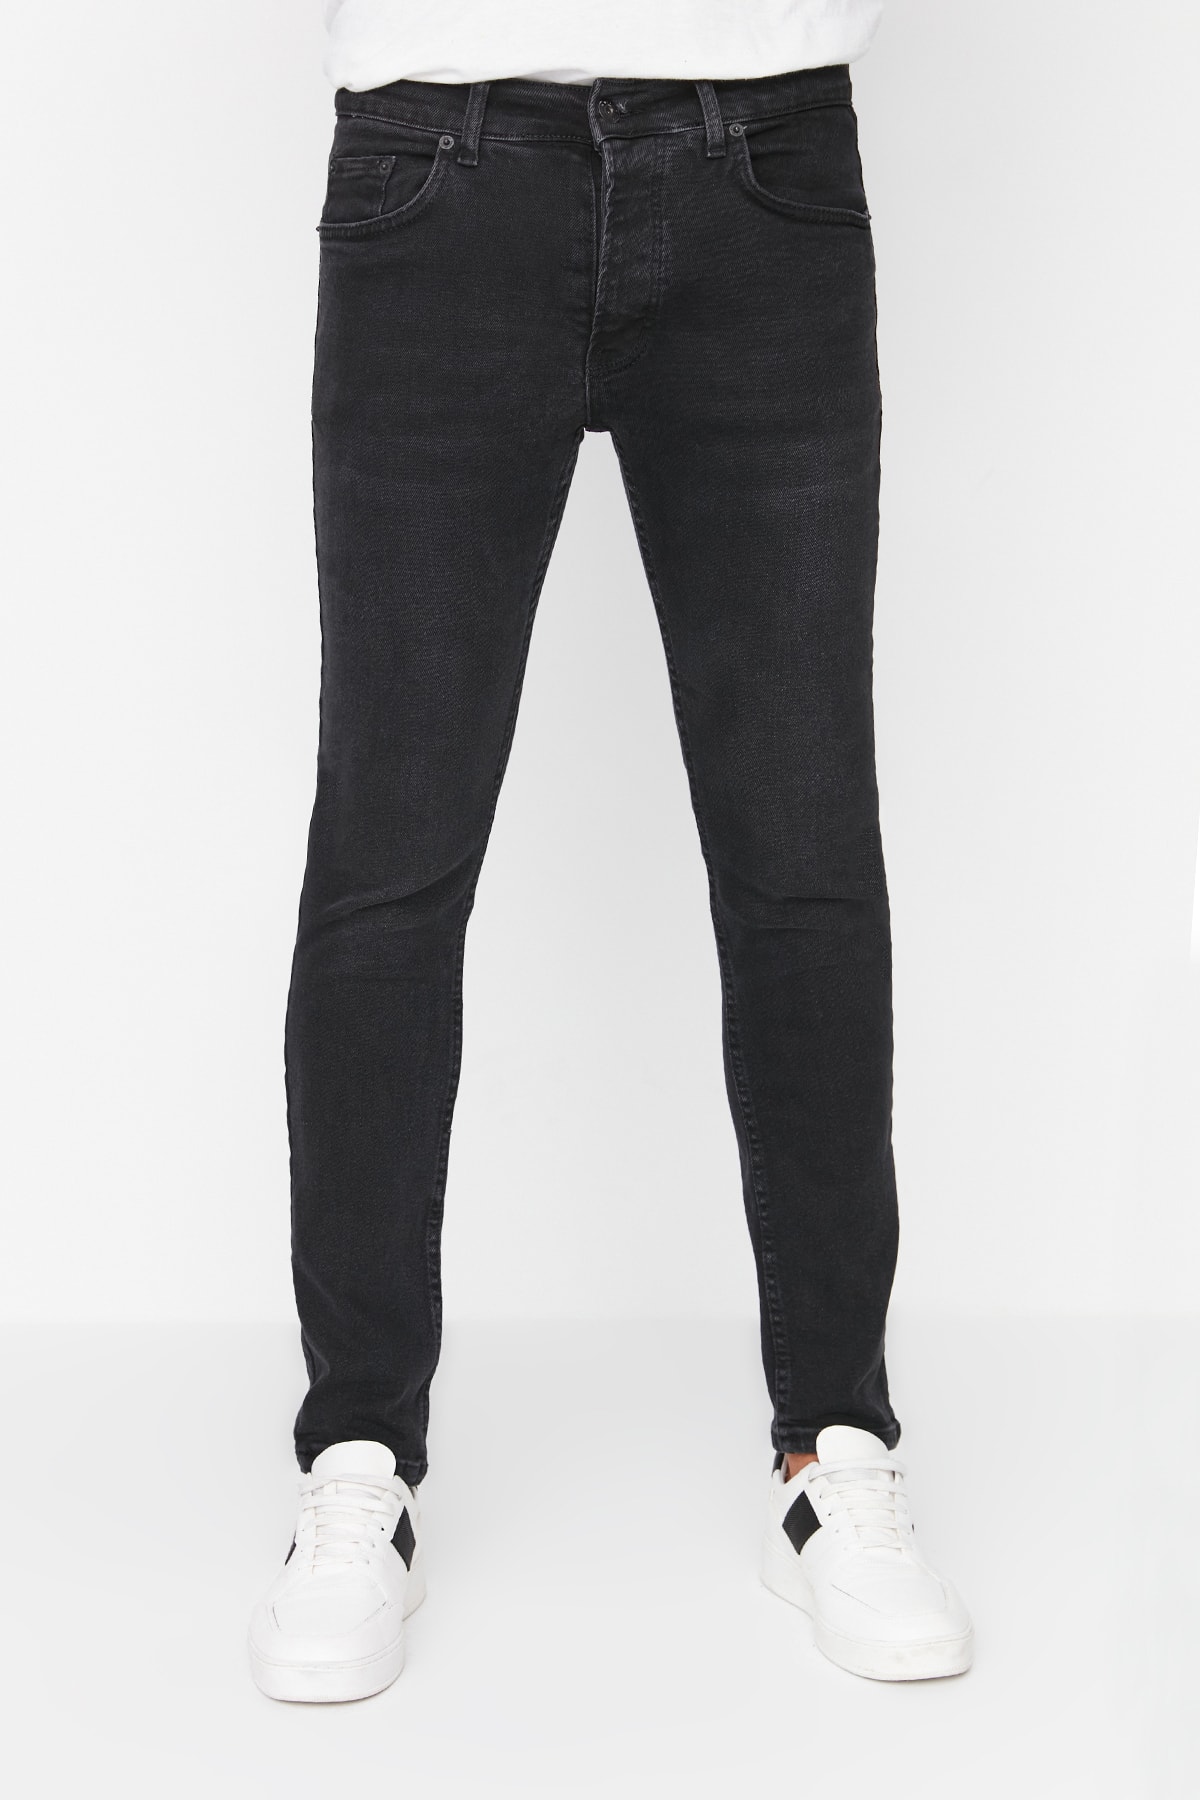 Джинсы Trendyol скинни, черный джинсы скинни uniqlo размер 29 черный